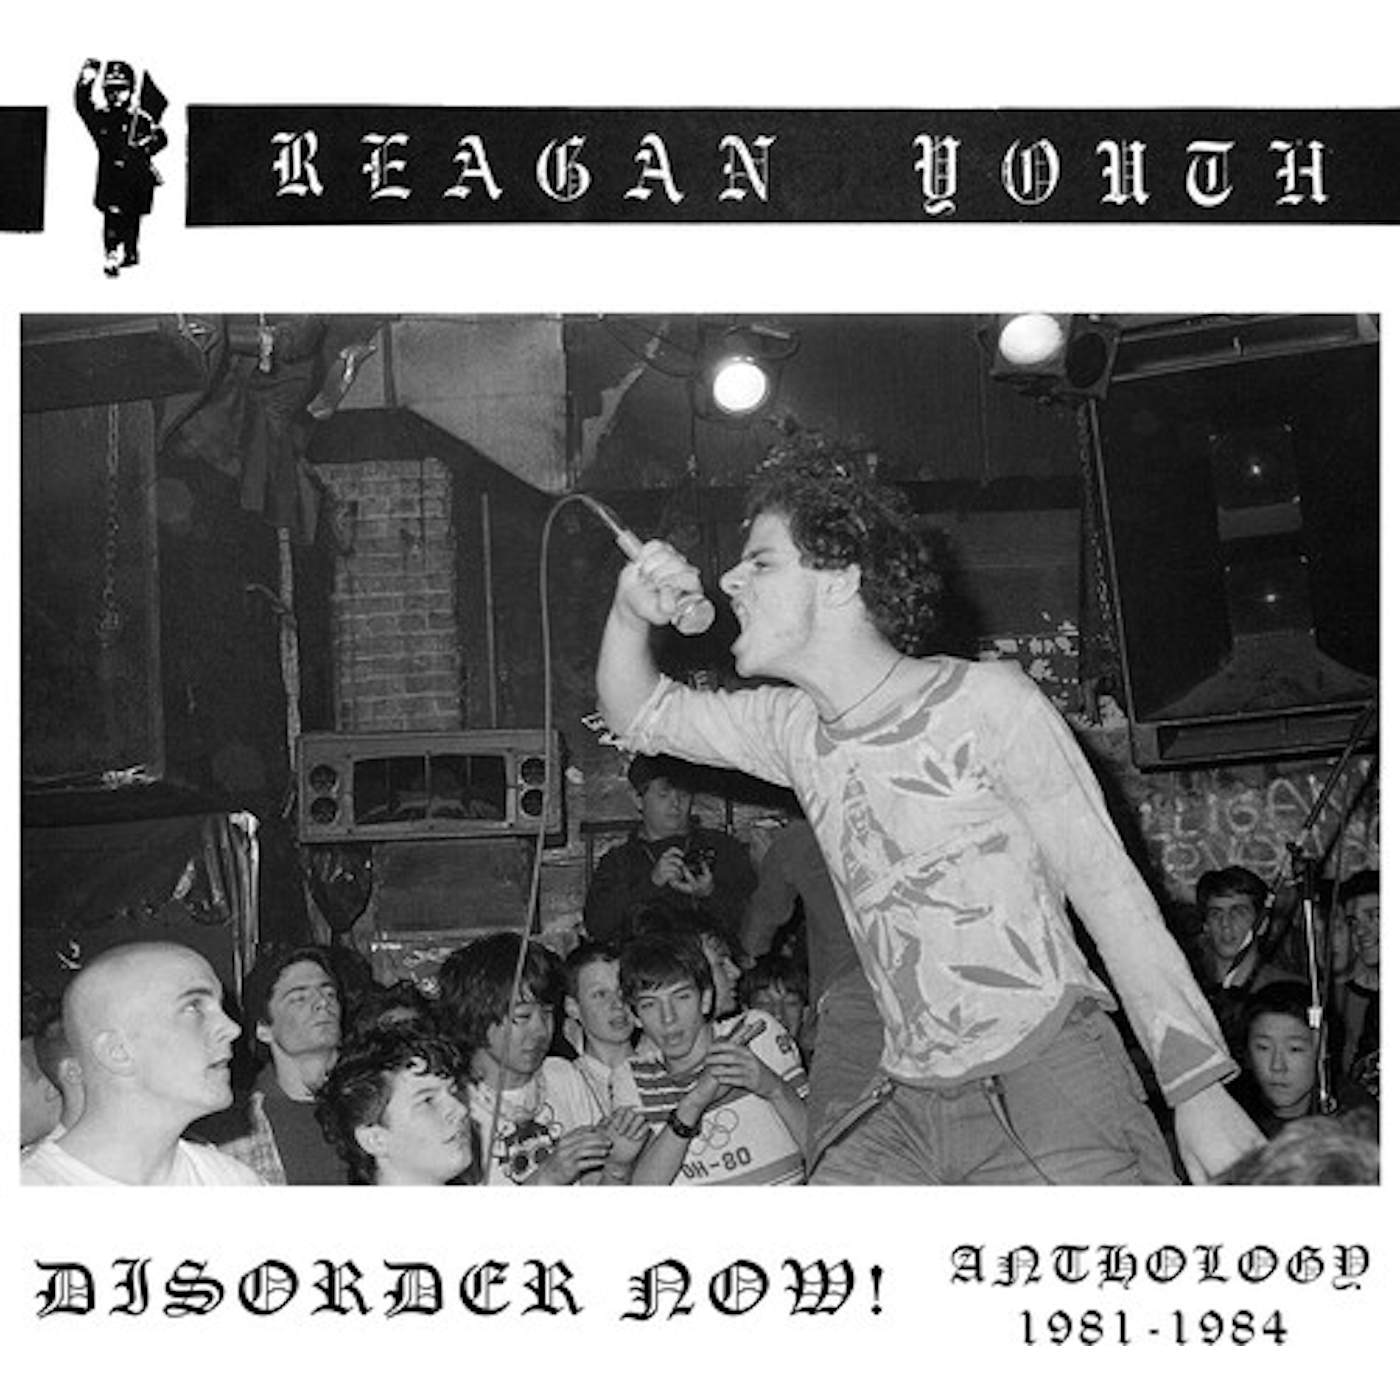 Reagan Youth DISORDER NOW ANTHOLOGY 1981-1984 (DIGIPAK) CD